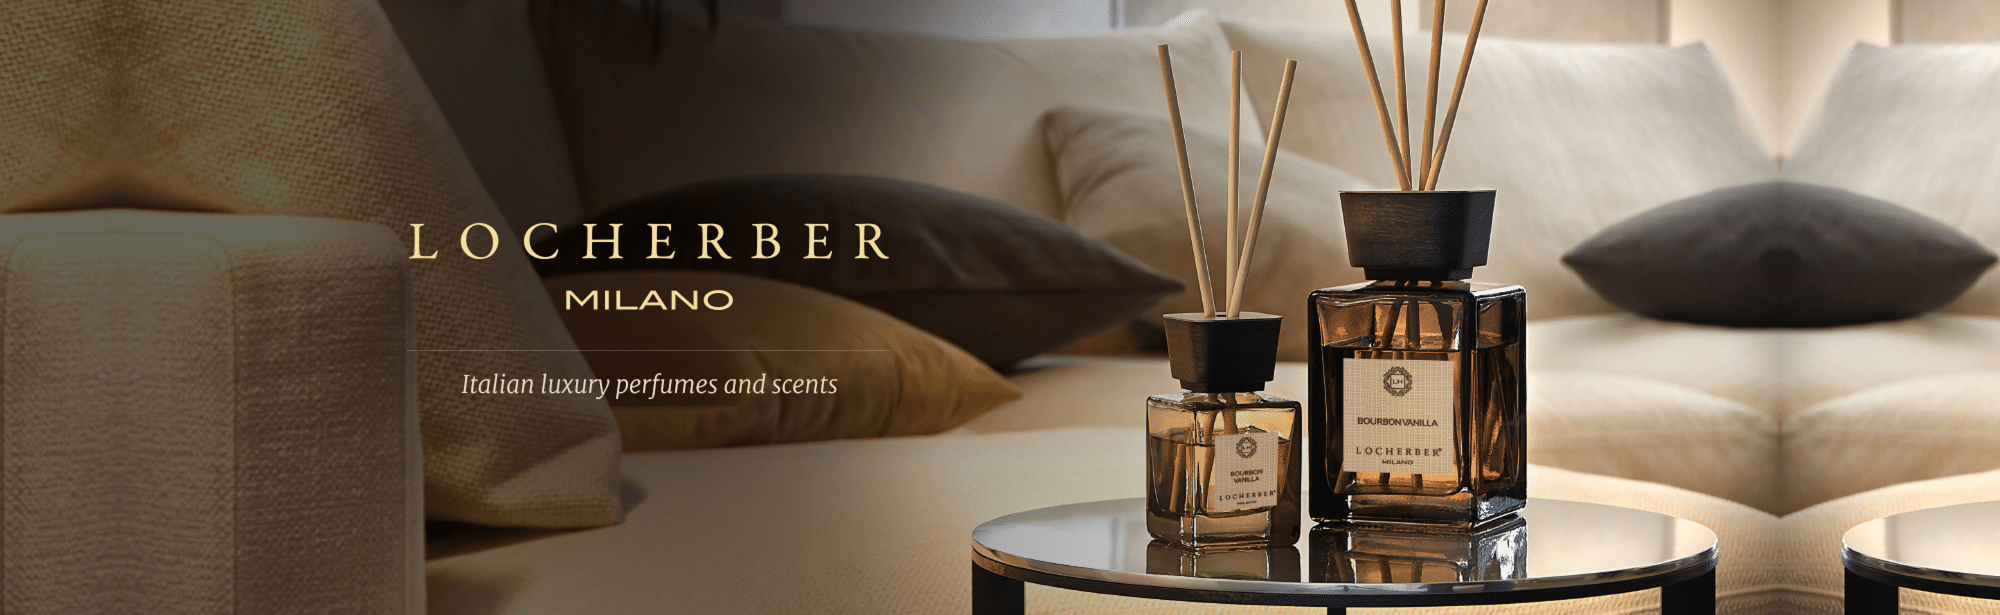 Locherber Milano Italian luxury fragrances - ARTEMPO MANIFATTURE DESIGN